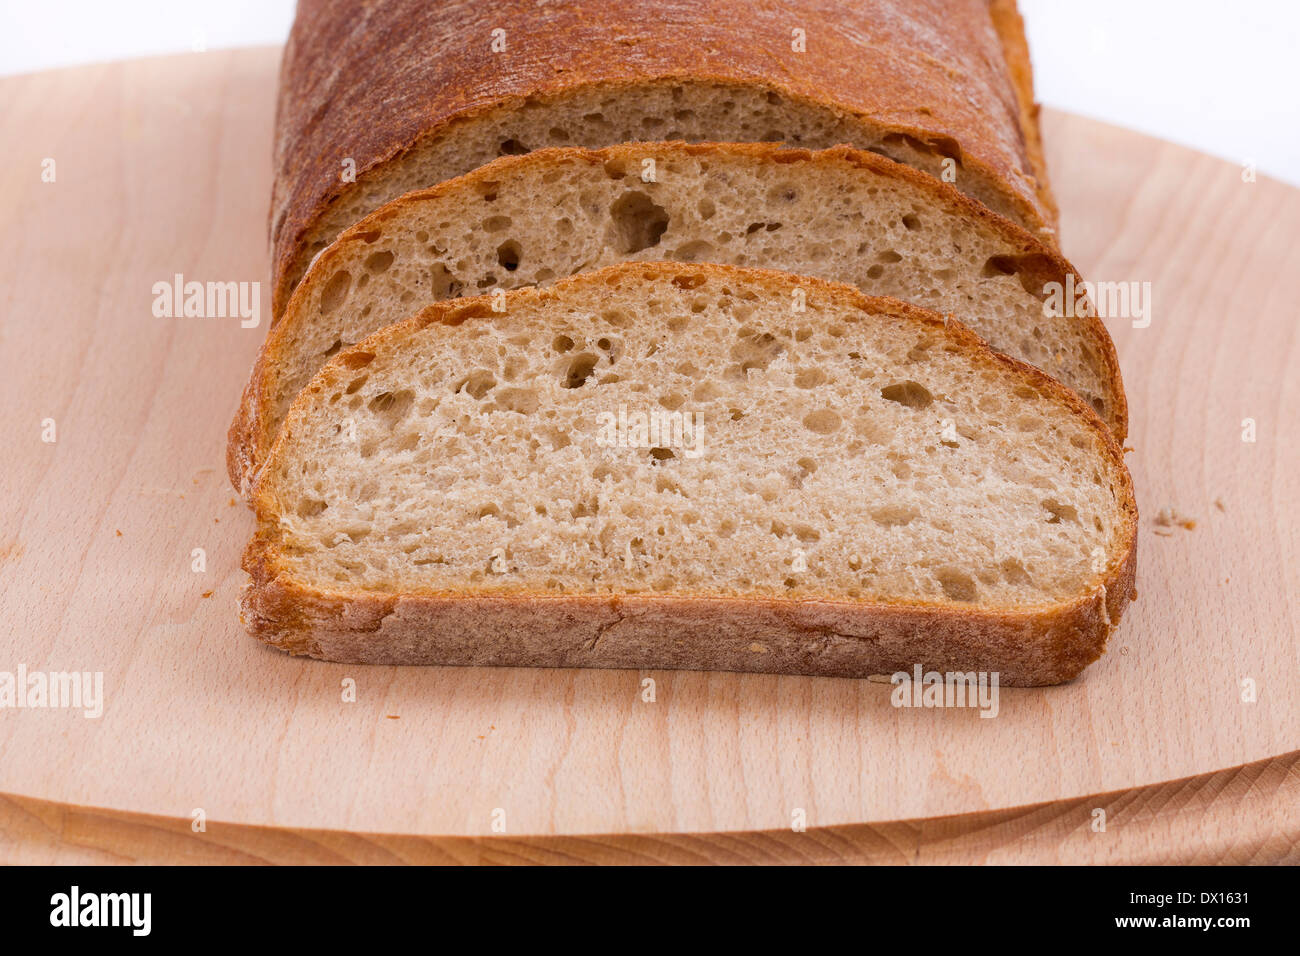 Le pain en tranches sur une planche en bois Banque D'Images